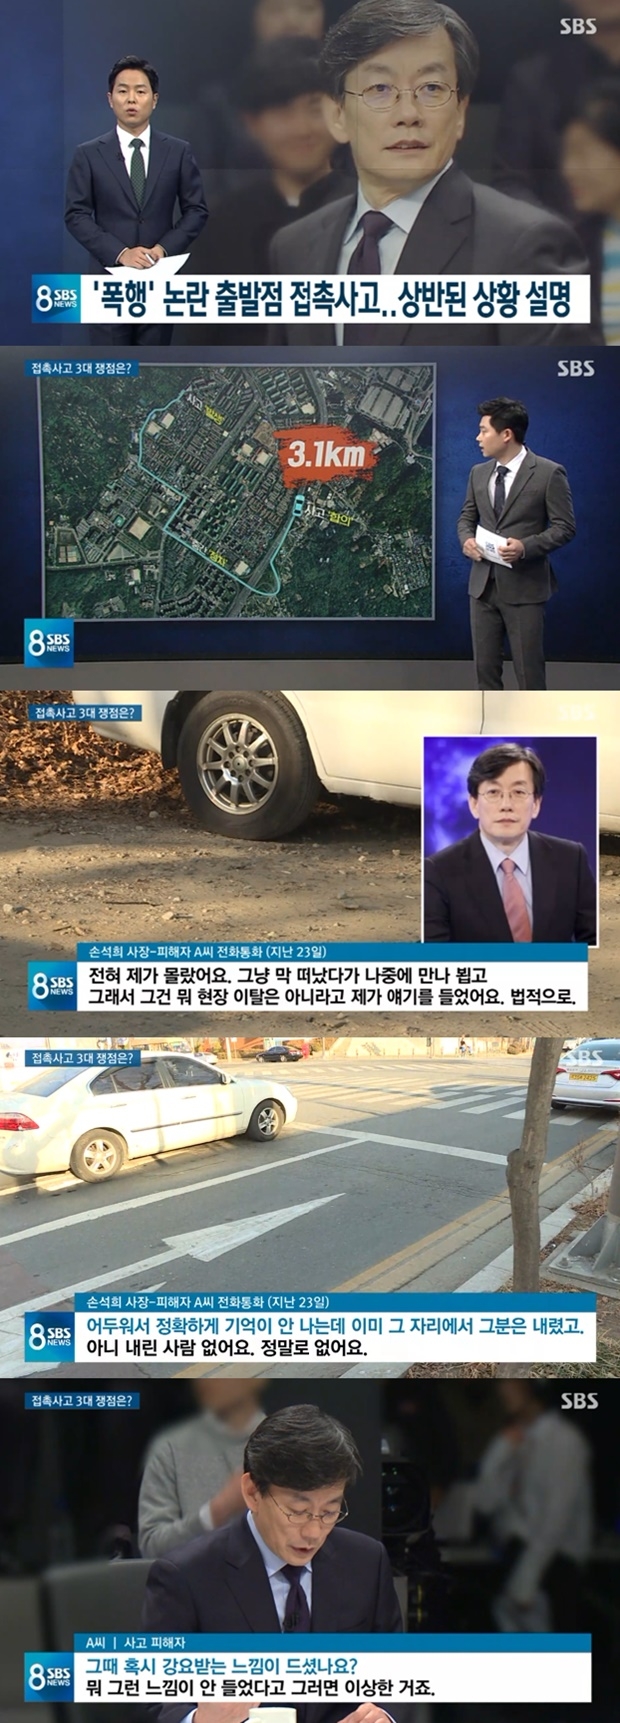 접촉사고 상대와 전화로 대화 나눈 손석희 JTBC 대표이사 (사진: SBS 뉴스)